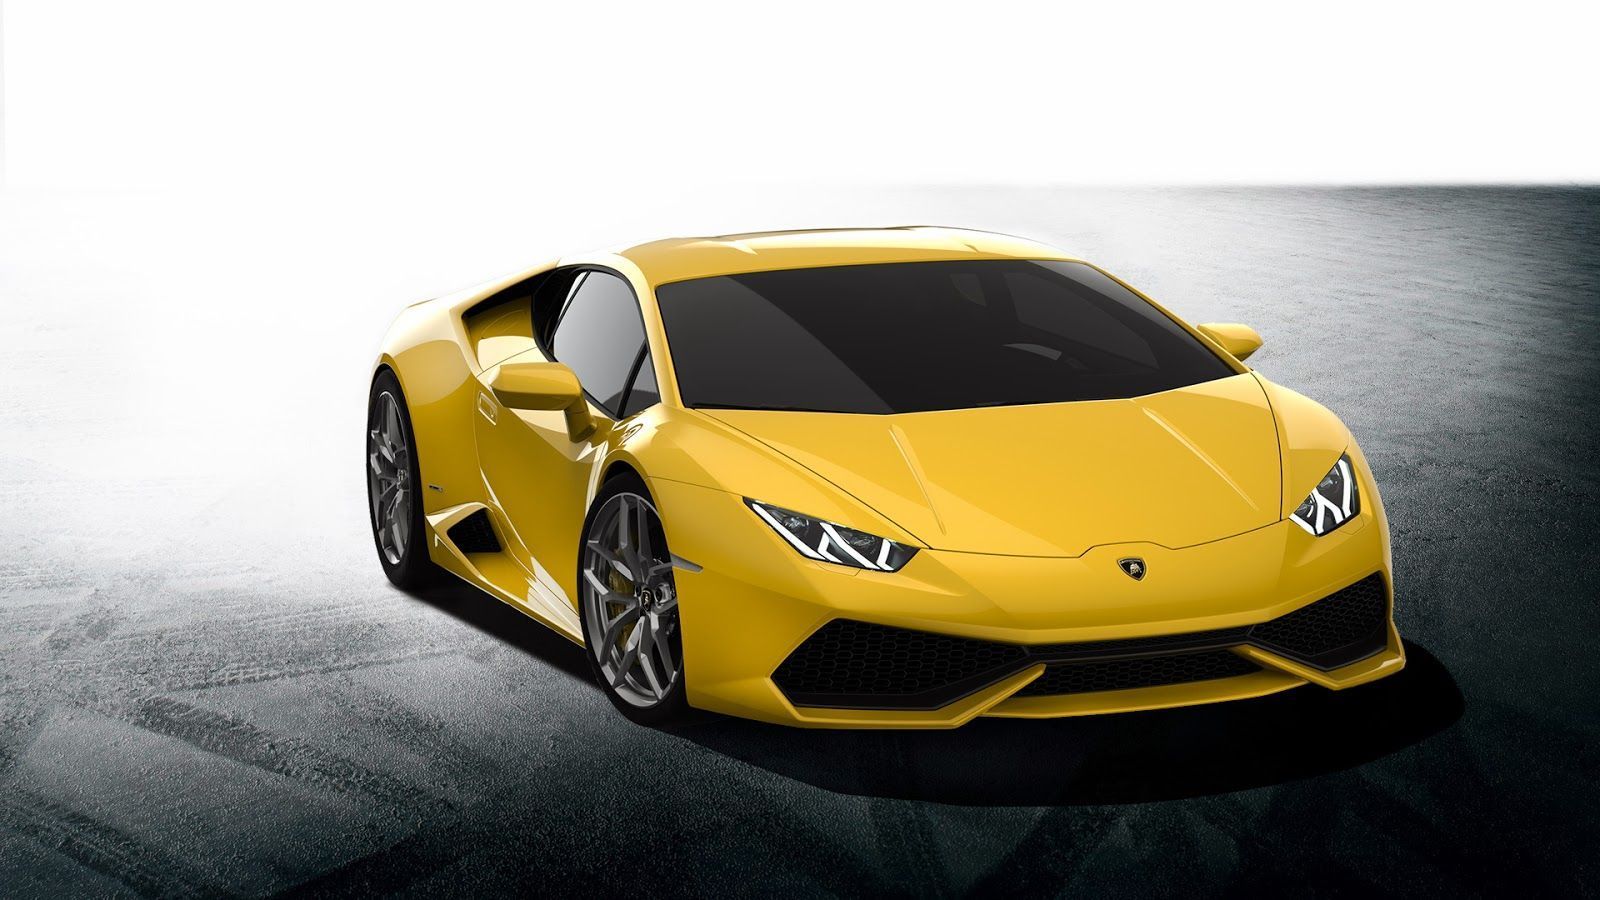 Wallpapers Full HD 1080p Lamborghini New 2015